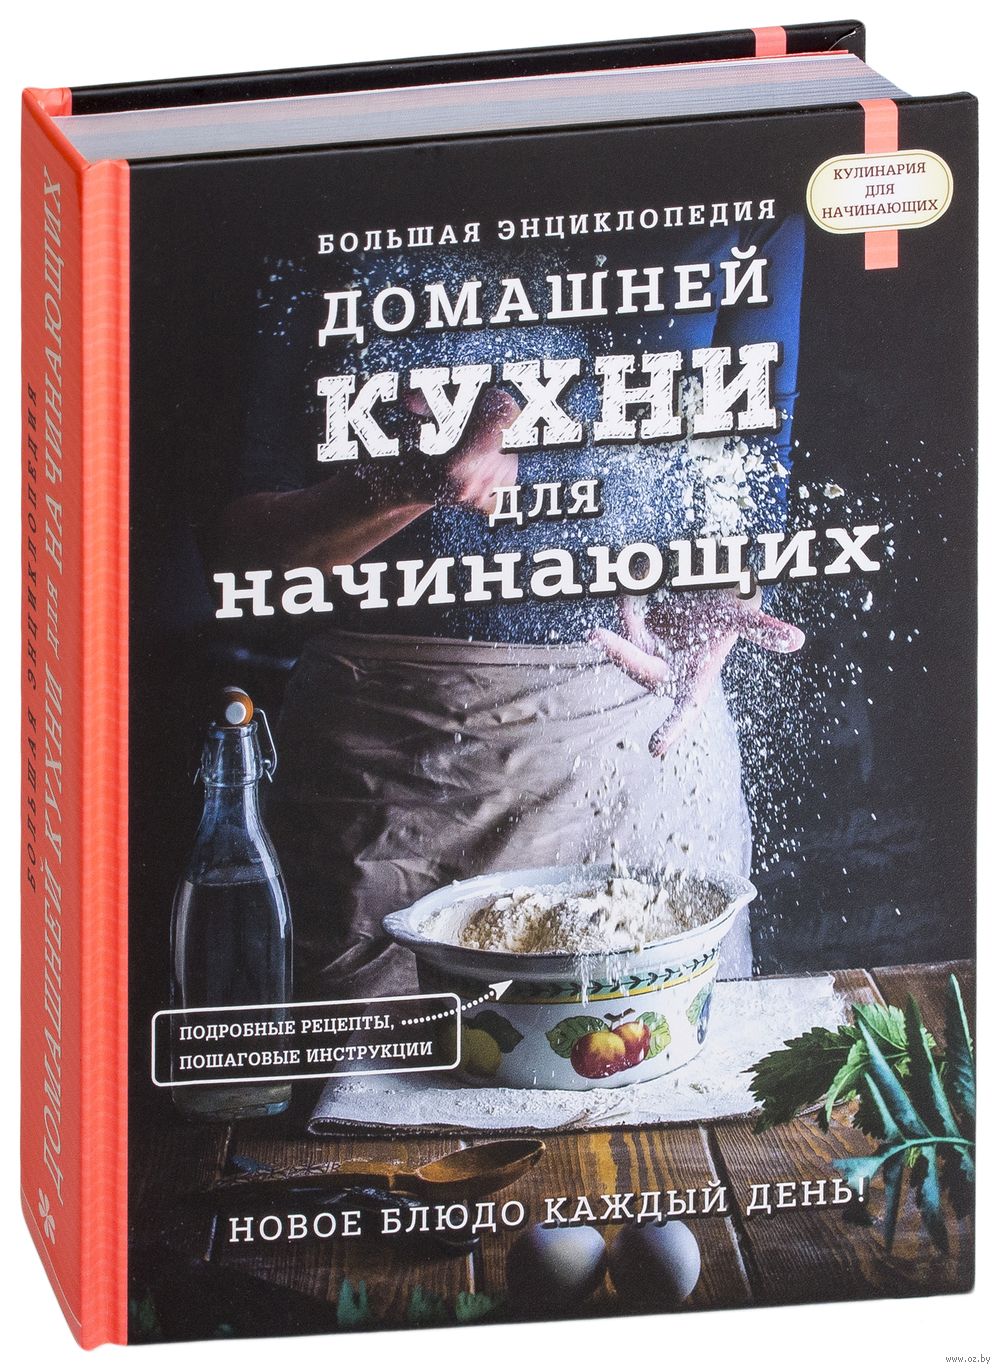 Блюда для любви: эротическая кухня — купить книги на русском языке в DomKnigi в Европе